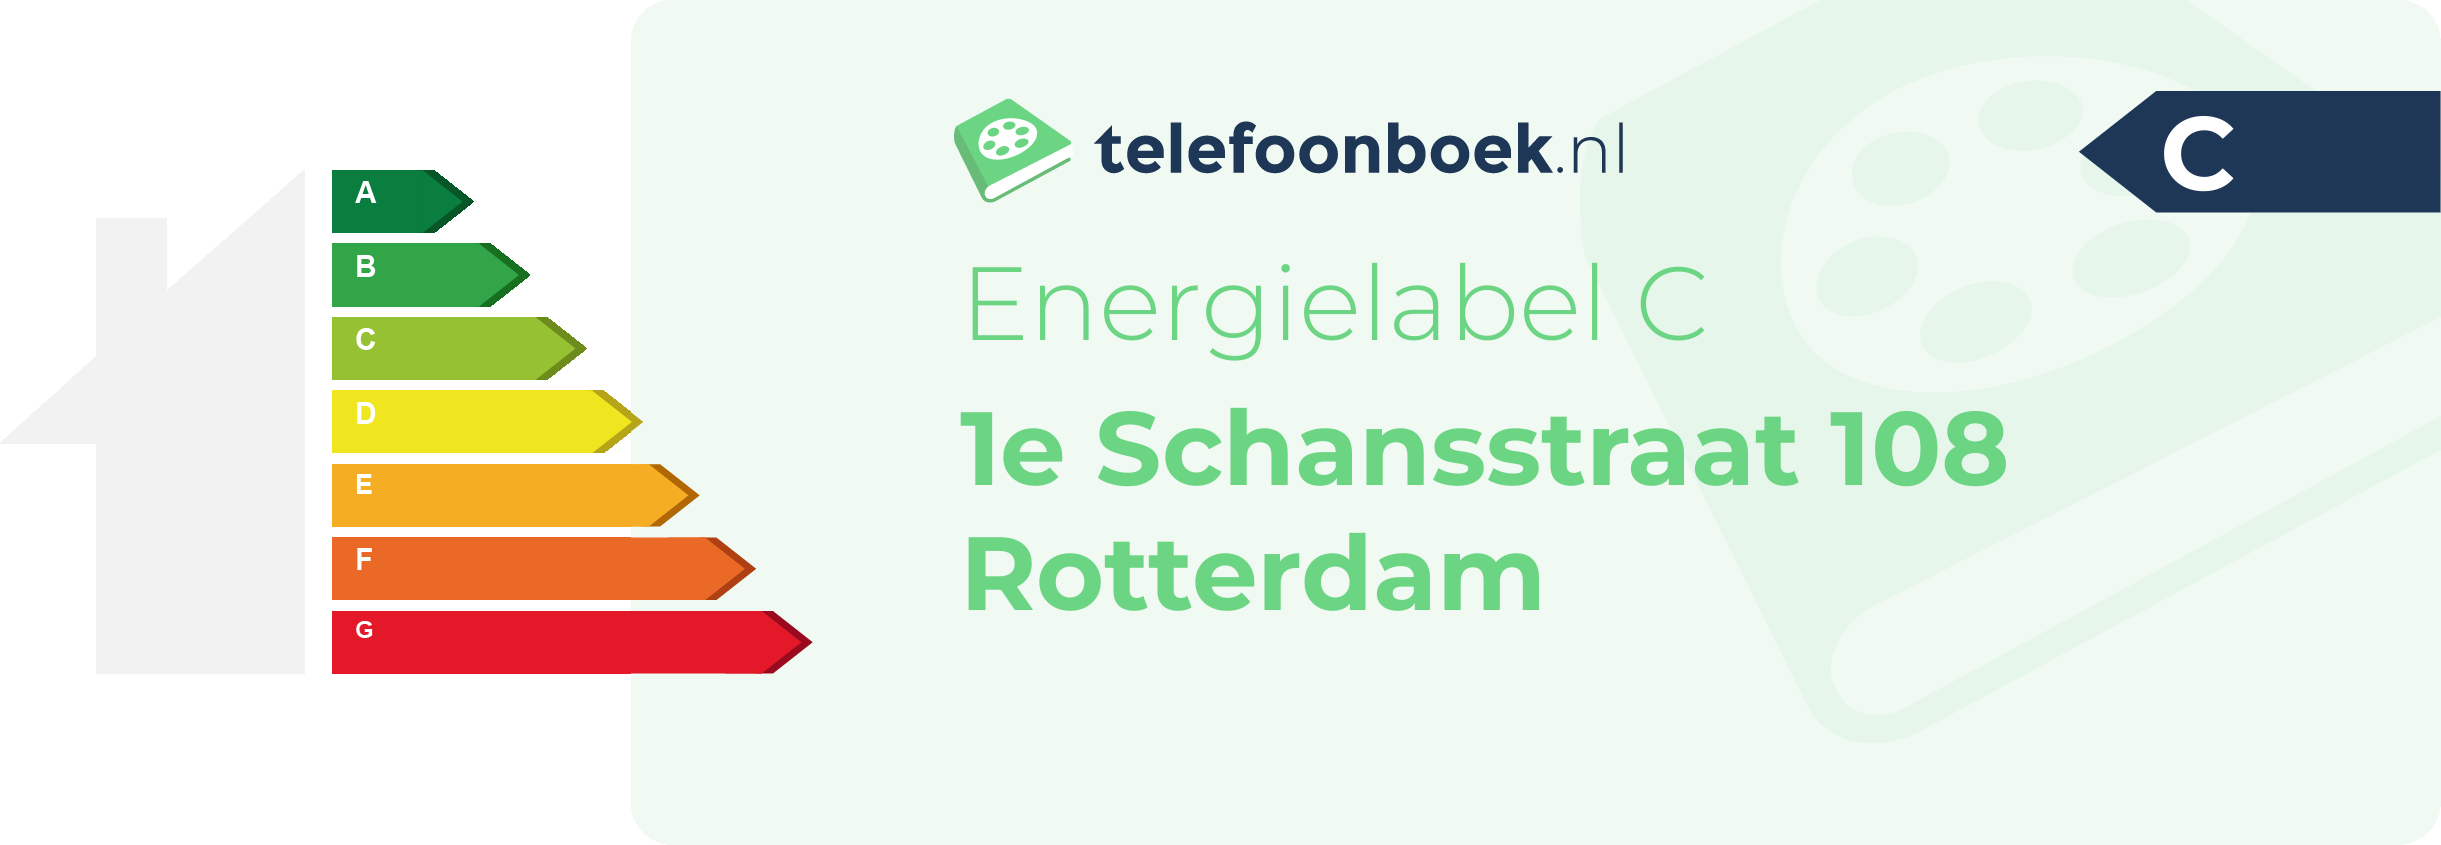 Energielabel 1e Schansstraat 108 Rotterdam